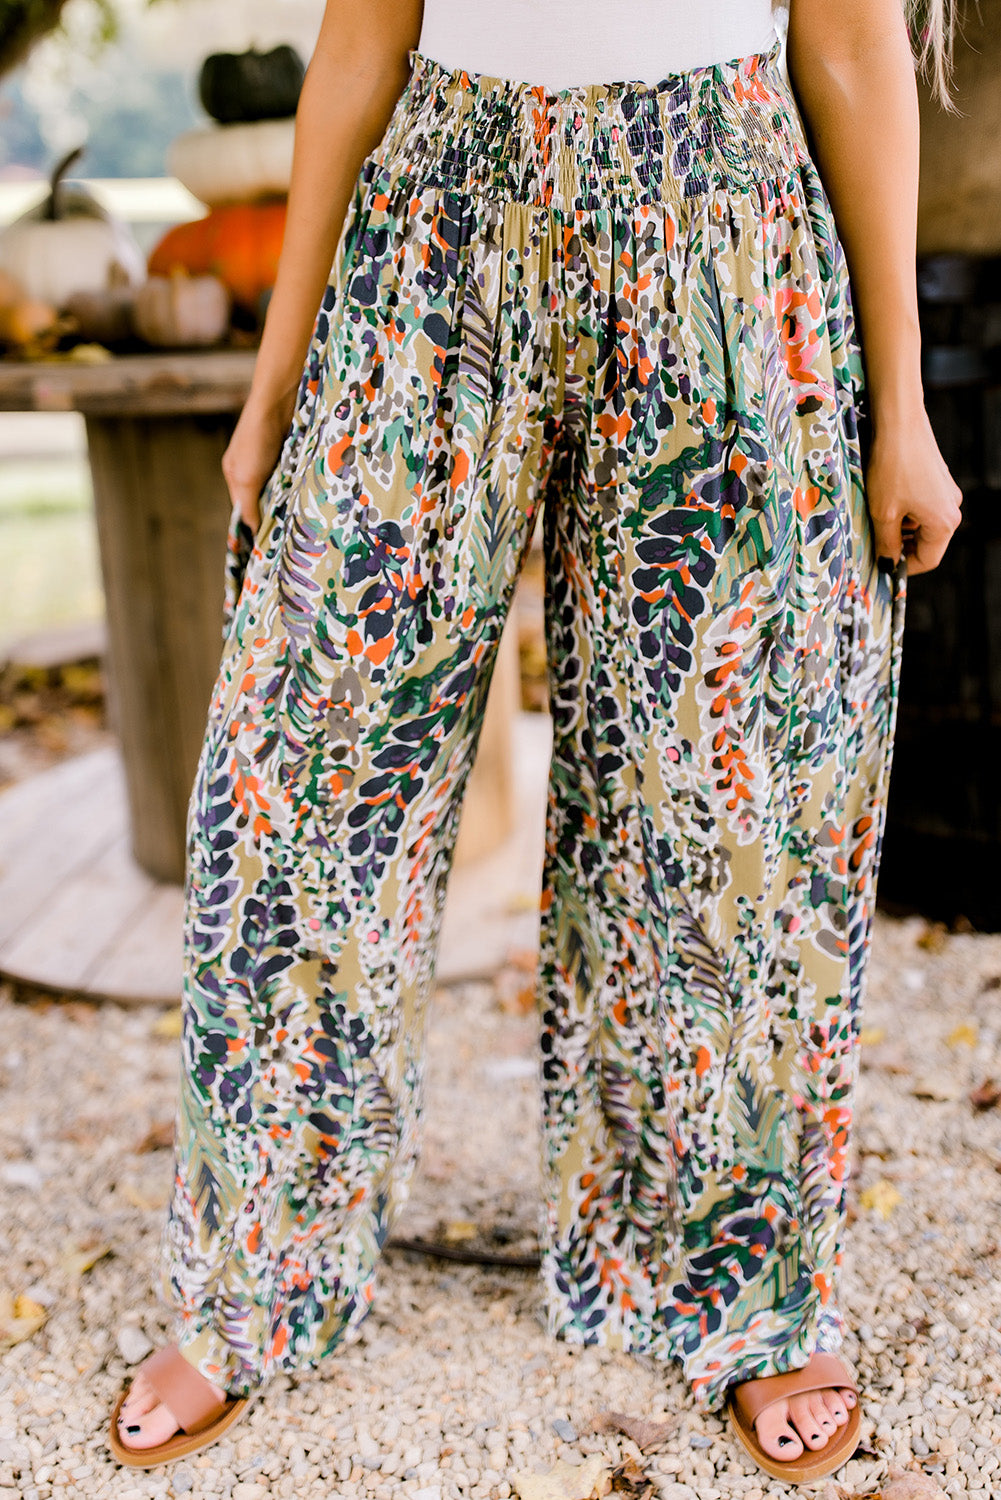 Pantaloni casual a gamba larga a vita alta arricciati con stampa floreale multicolore